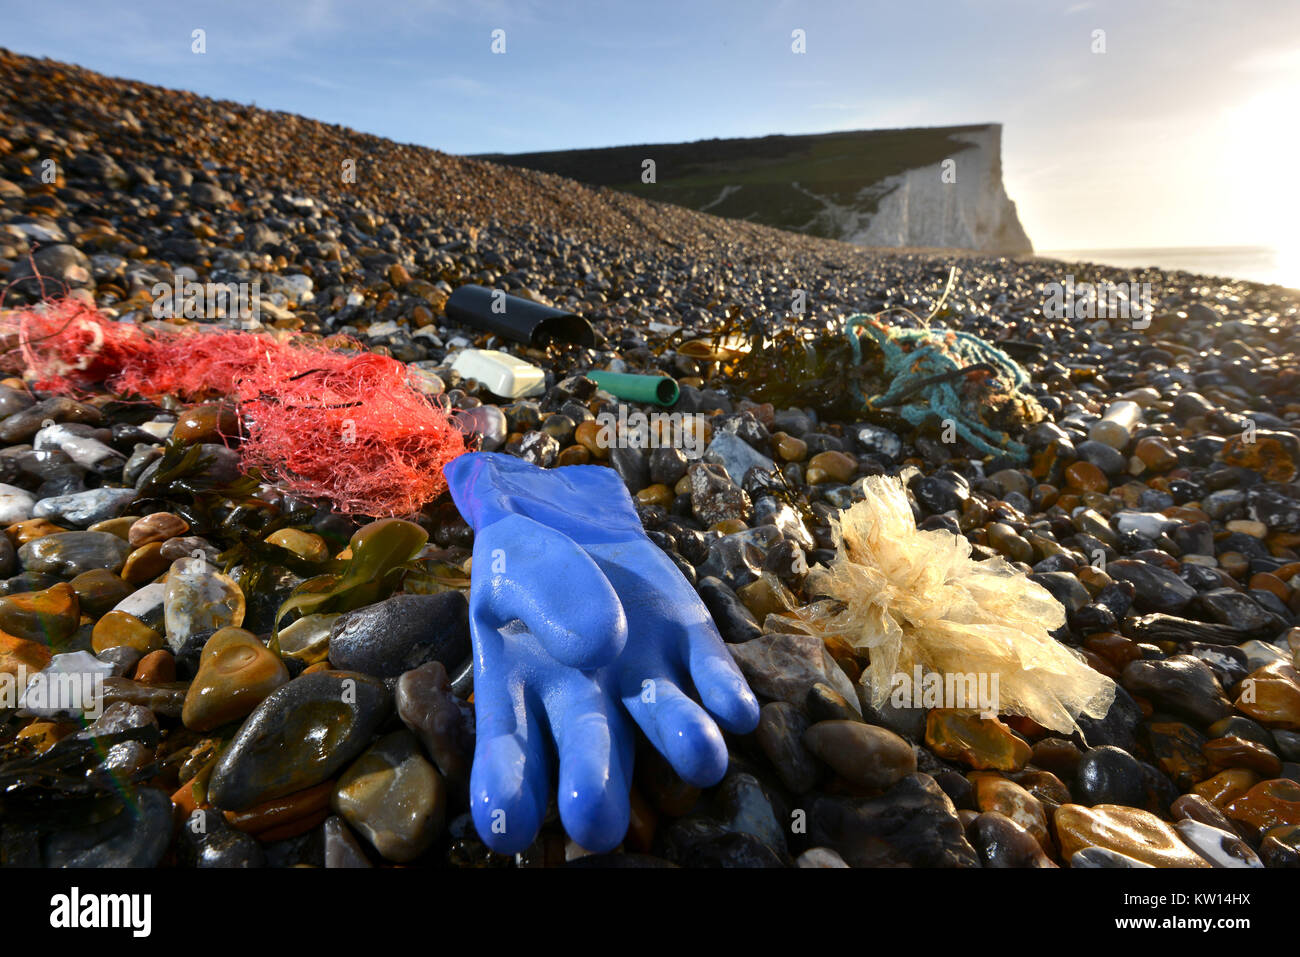 Plastik und Müll an einem Strand in der Nähe der berühmten Sieben Schwestern Kreidefelsen im südlichen England, Cuckmere Haven, East Sussex, UK. Stockfoto